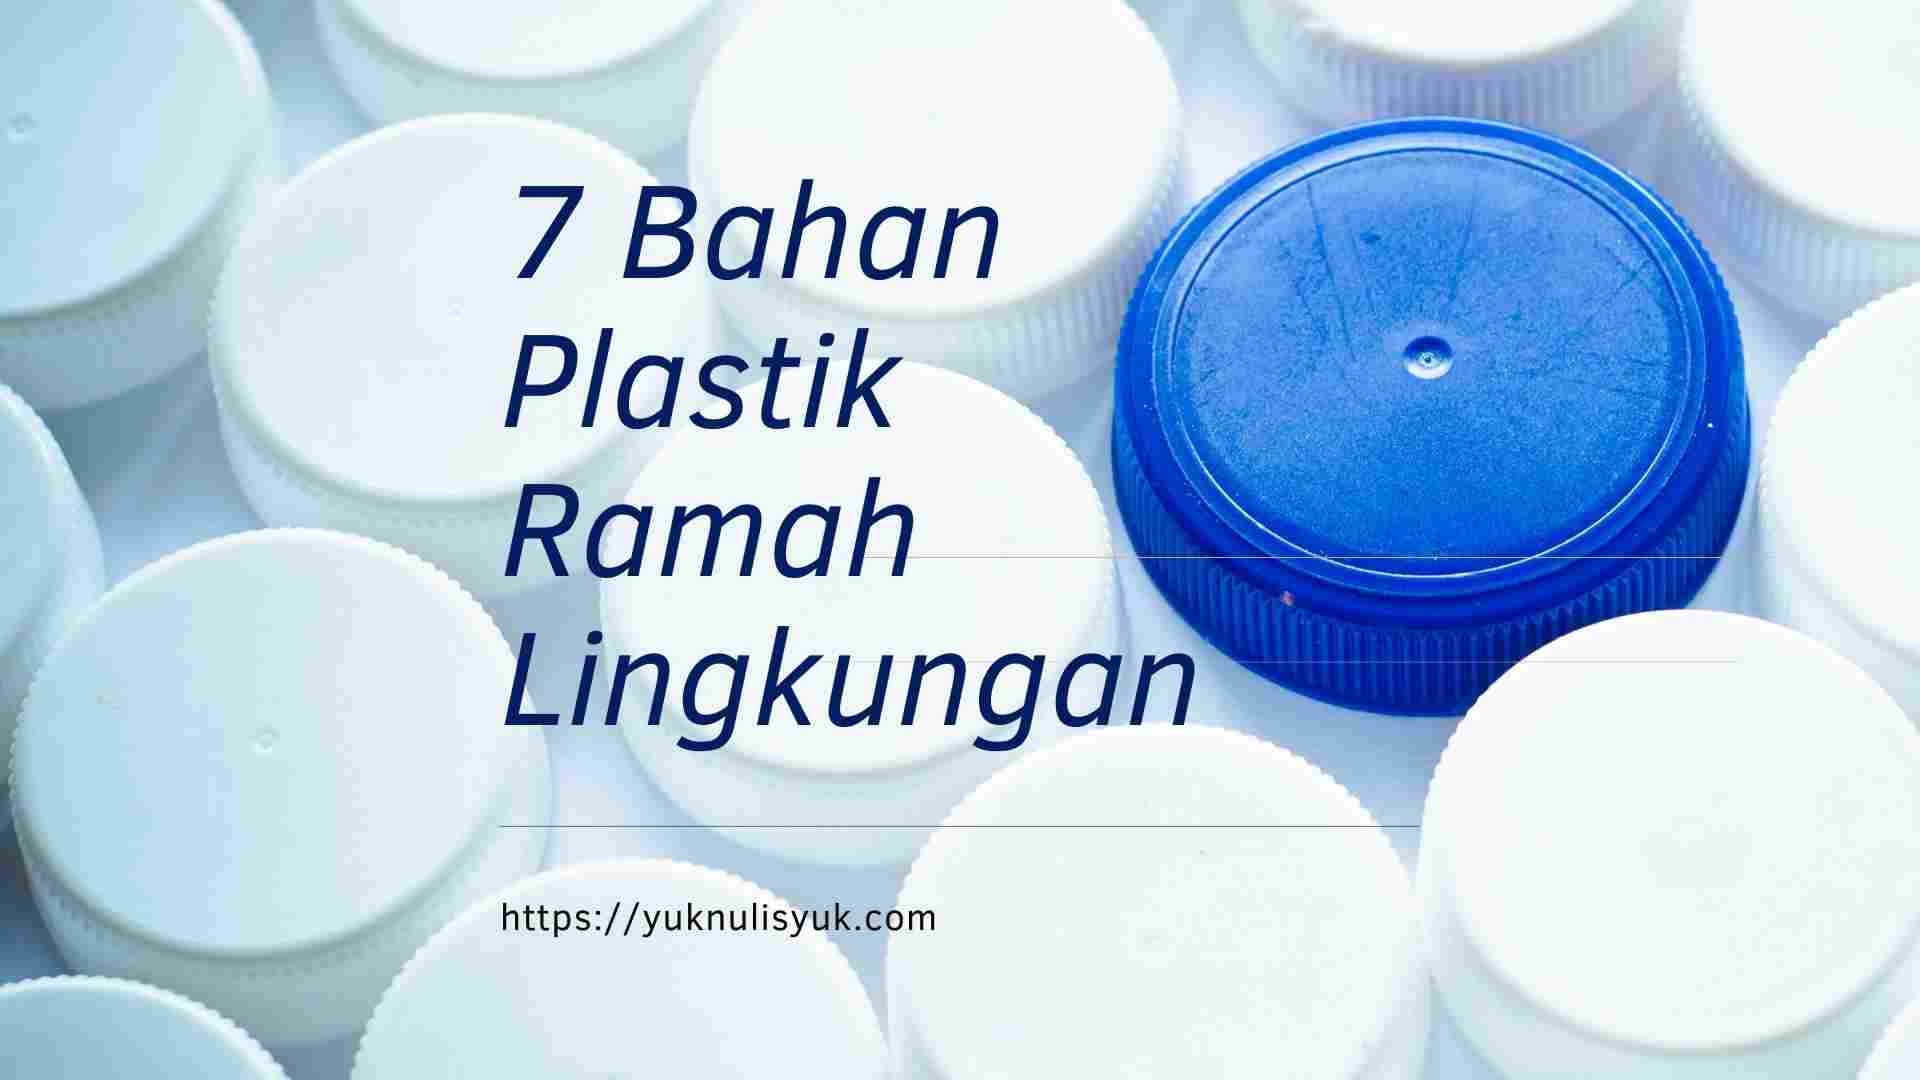 7 Bahan Plastik Ramah Lingkungan